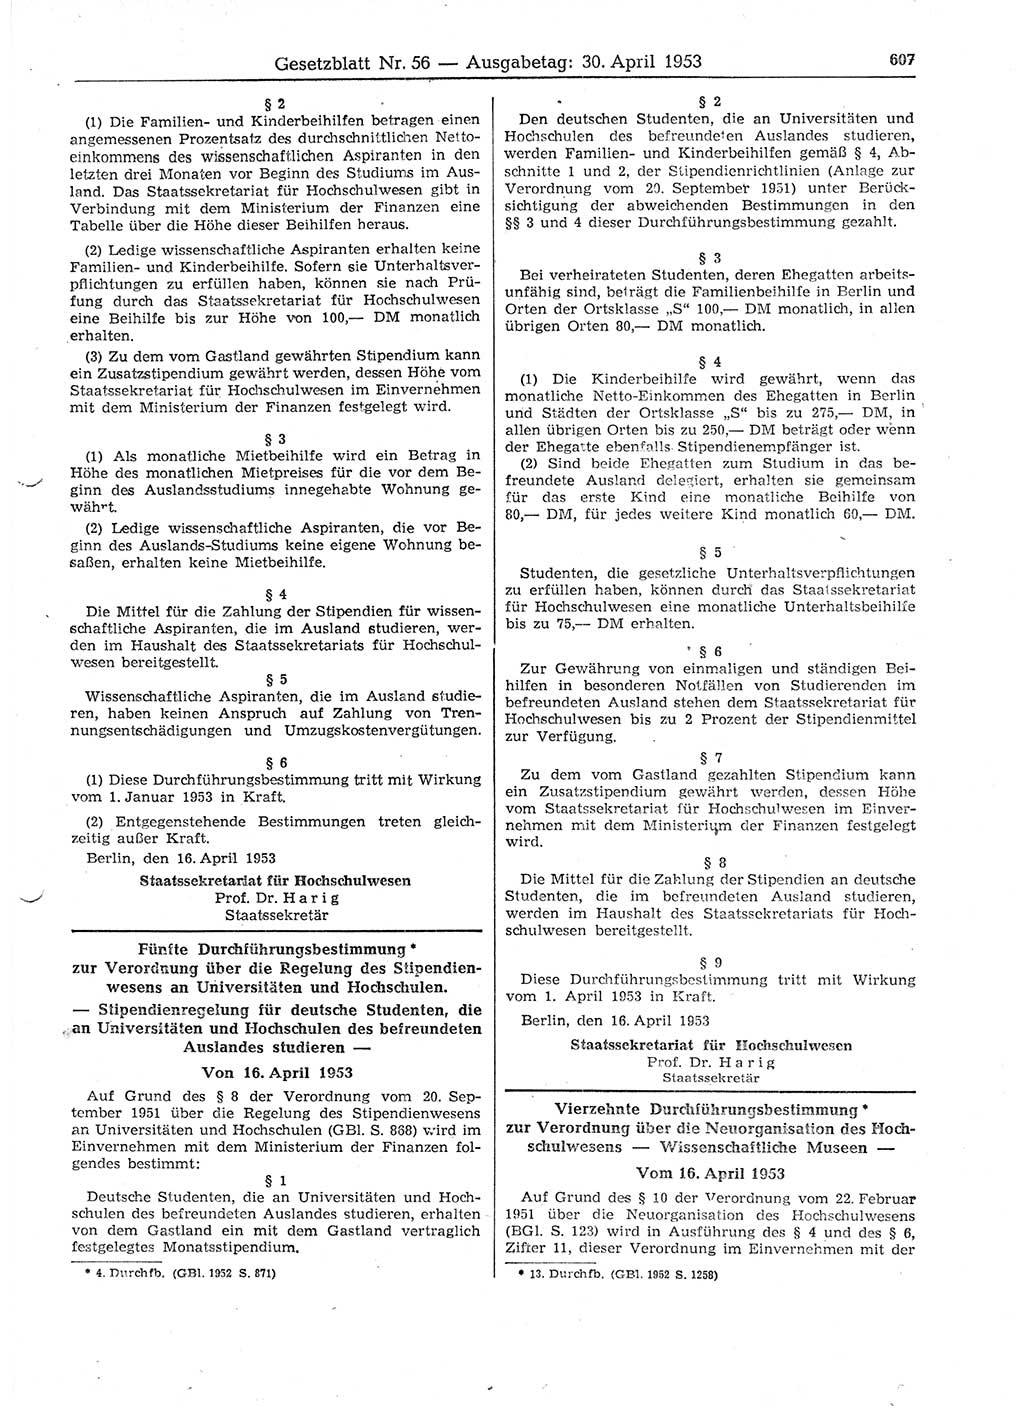 Gesetzblatt (GBl.) der Deutschen Demokratischen Republik (DDR) 1953, Seite 607 (GBl. DDR 1953, S. 607)